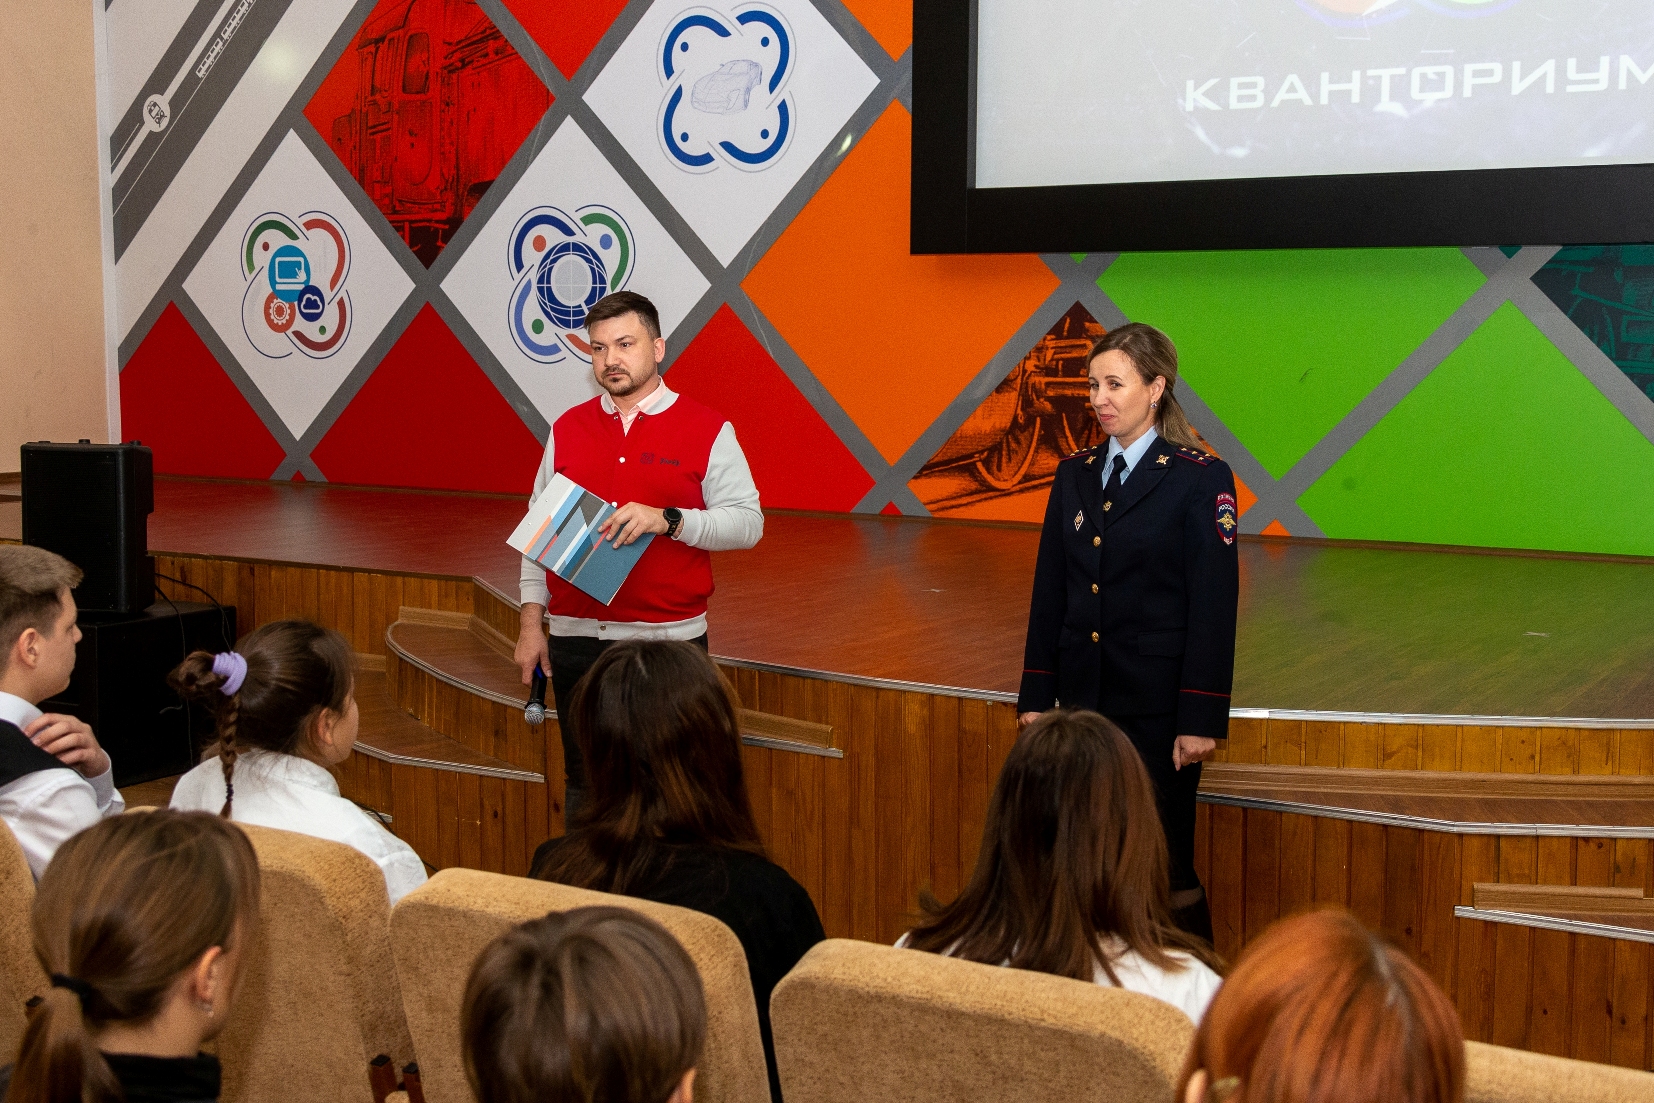 ЗабЖД объявила о начале детского конкурса настольных игр «Безопасные дорожки» 